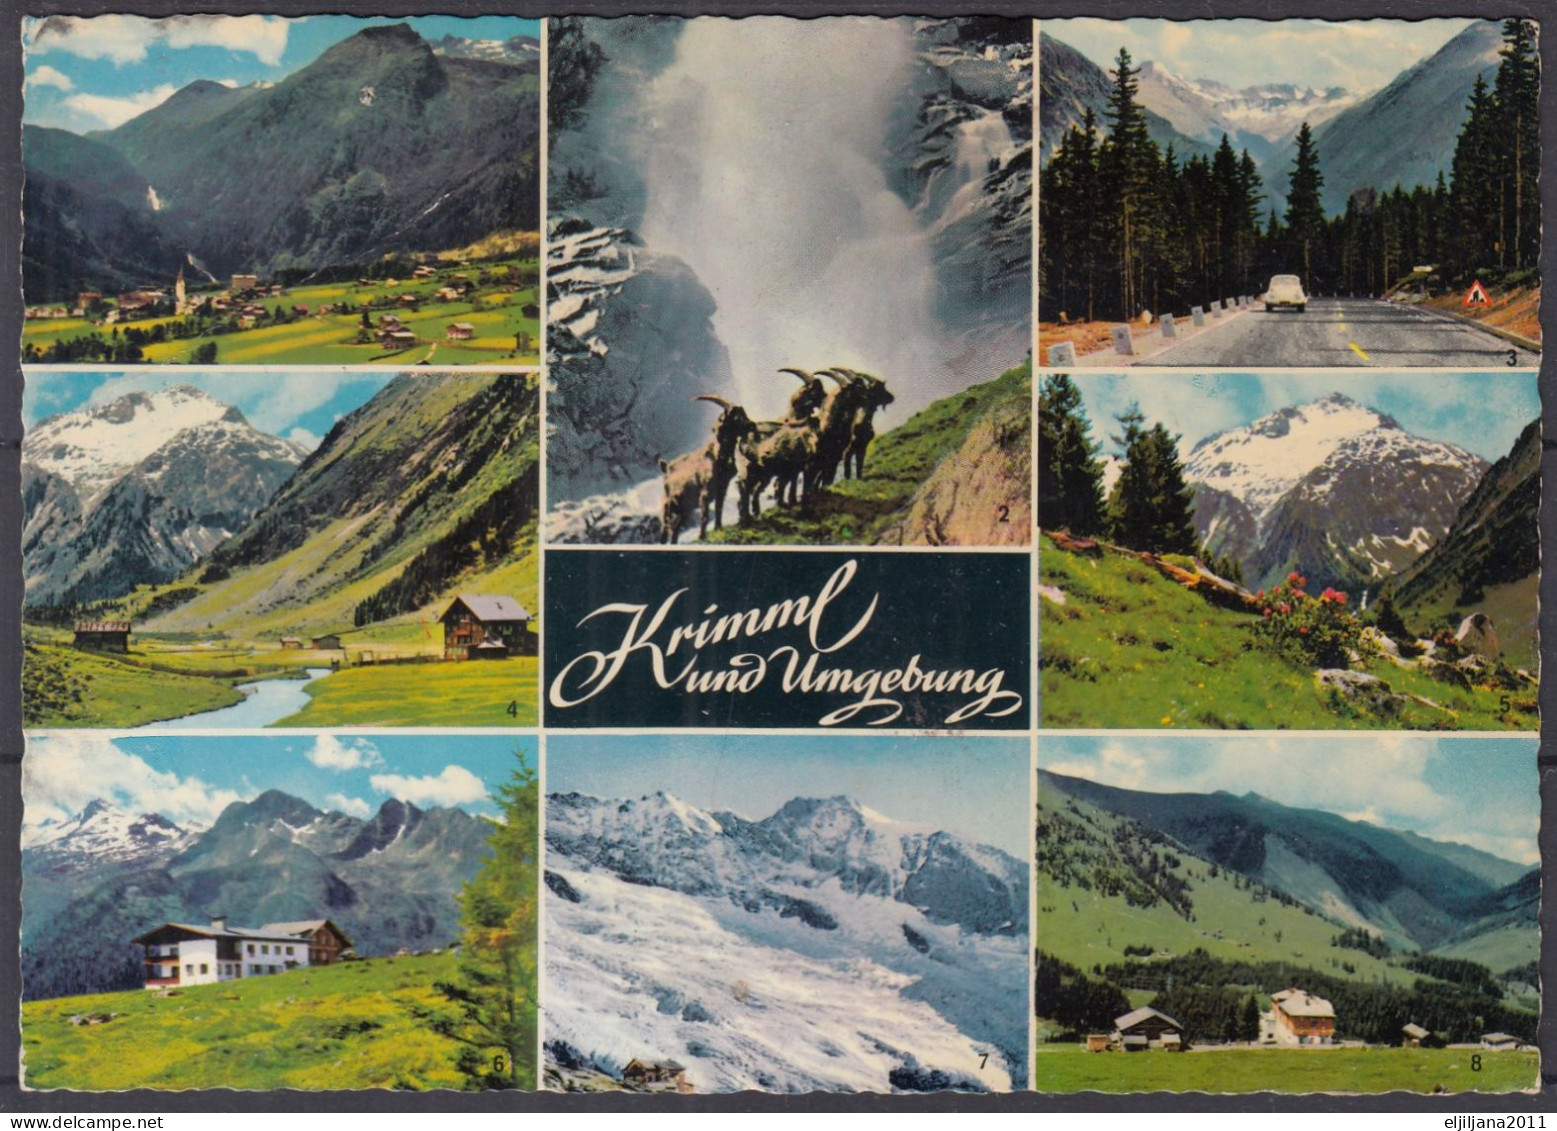 Austria / Österreich 1970 ⁕ KRIMML Und UMGEBUNG ⁕ Postcard With Stamp - Krimml